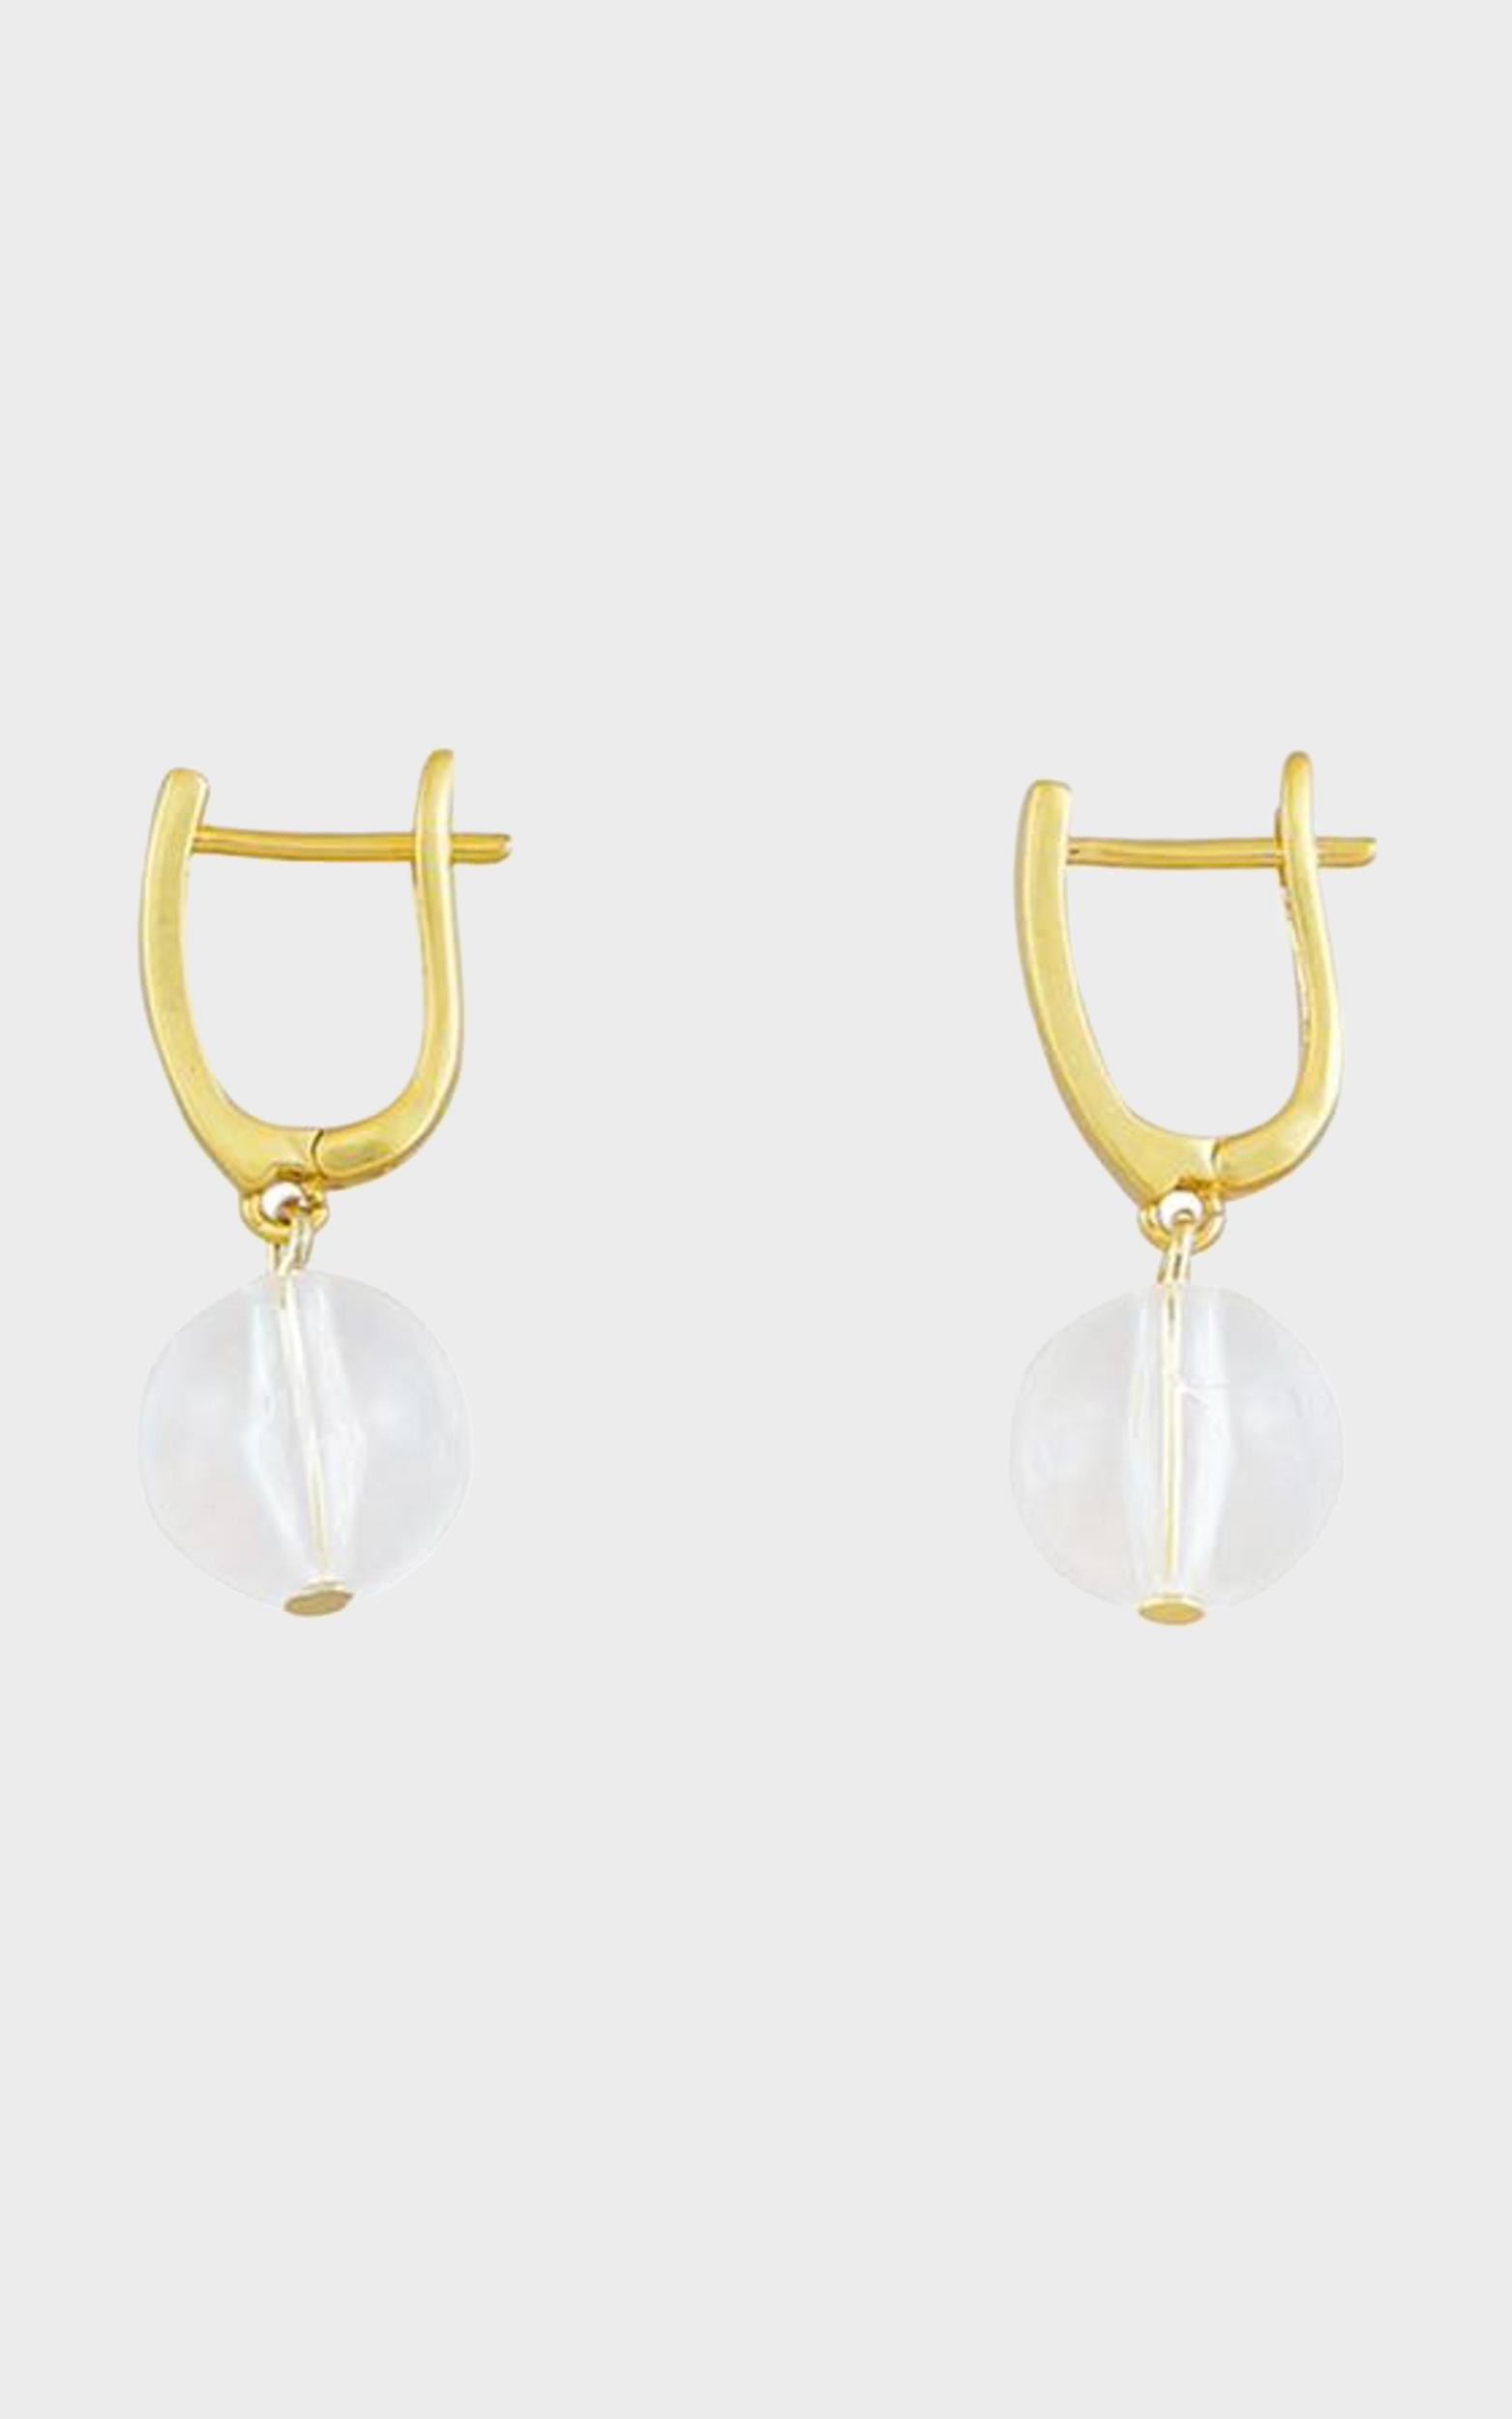 Jolie & Deen - Lorrie Earrings in Gold, , hi-res image number null